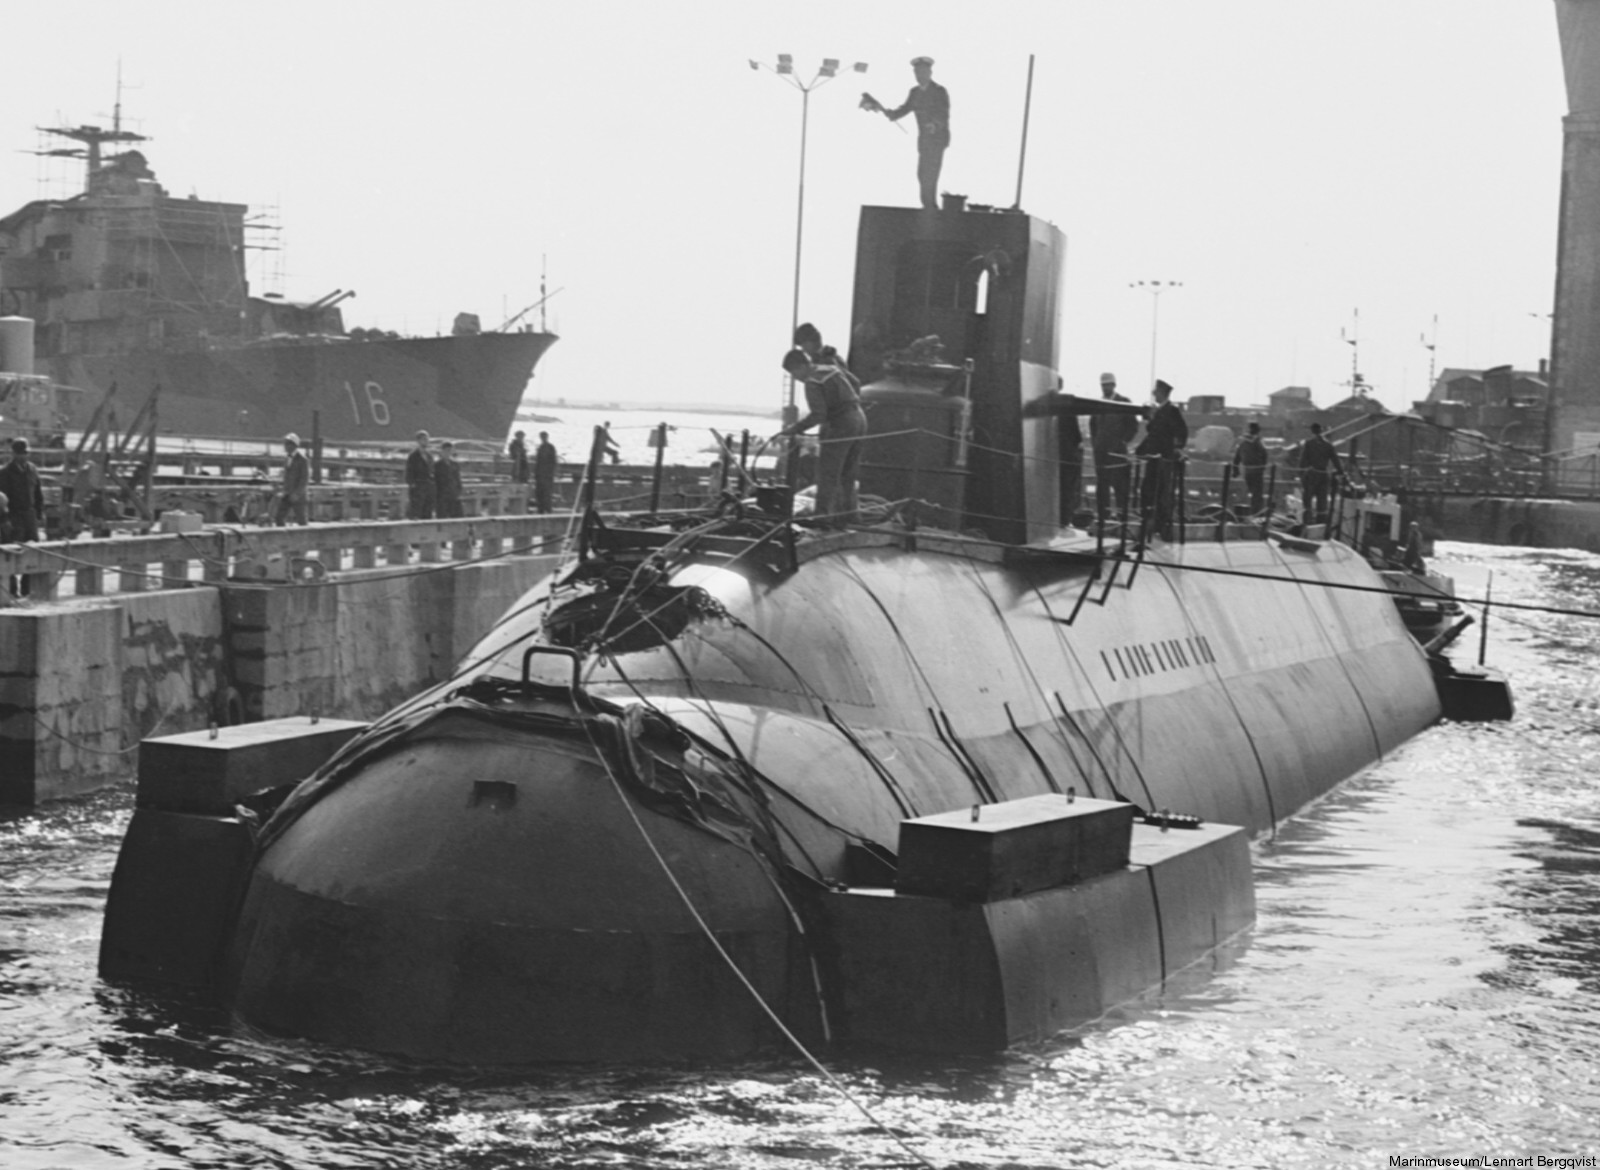 hswms hms sjöhästen shä sjöormen a11 class submarine ssk swedish navy svenska marinen försvarsmakten 14